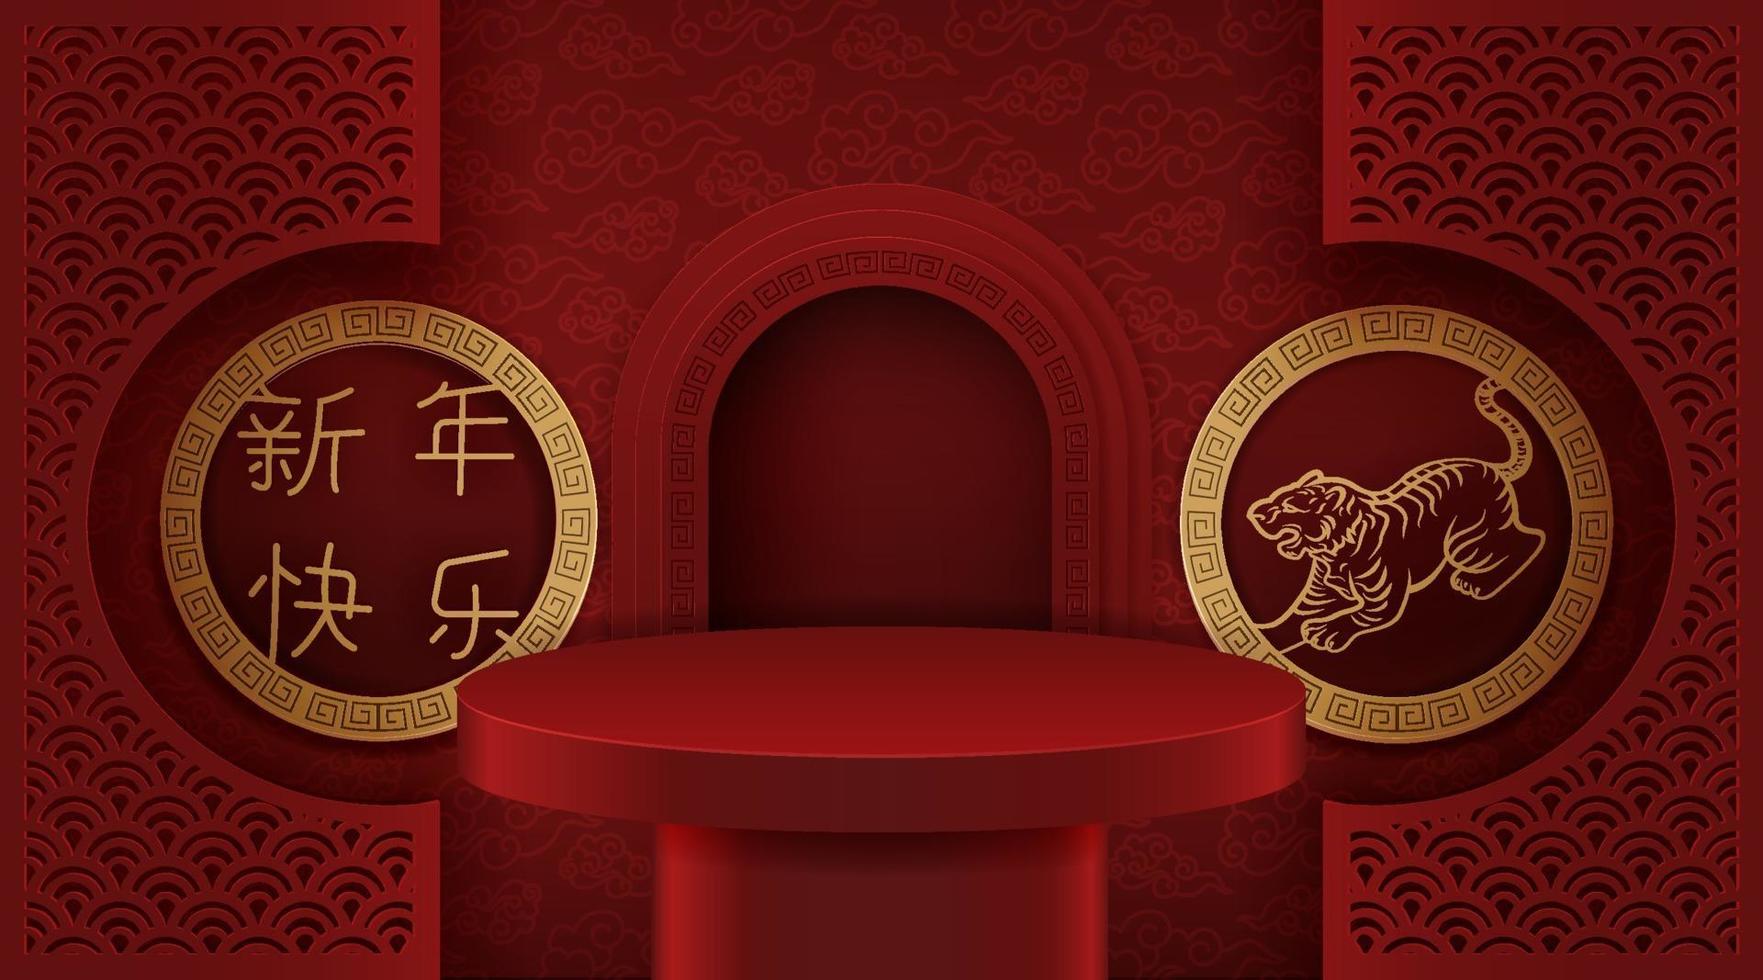 podio etapa estilo chino, para el año nuevo chino y festivales. vector